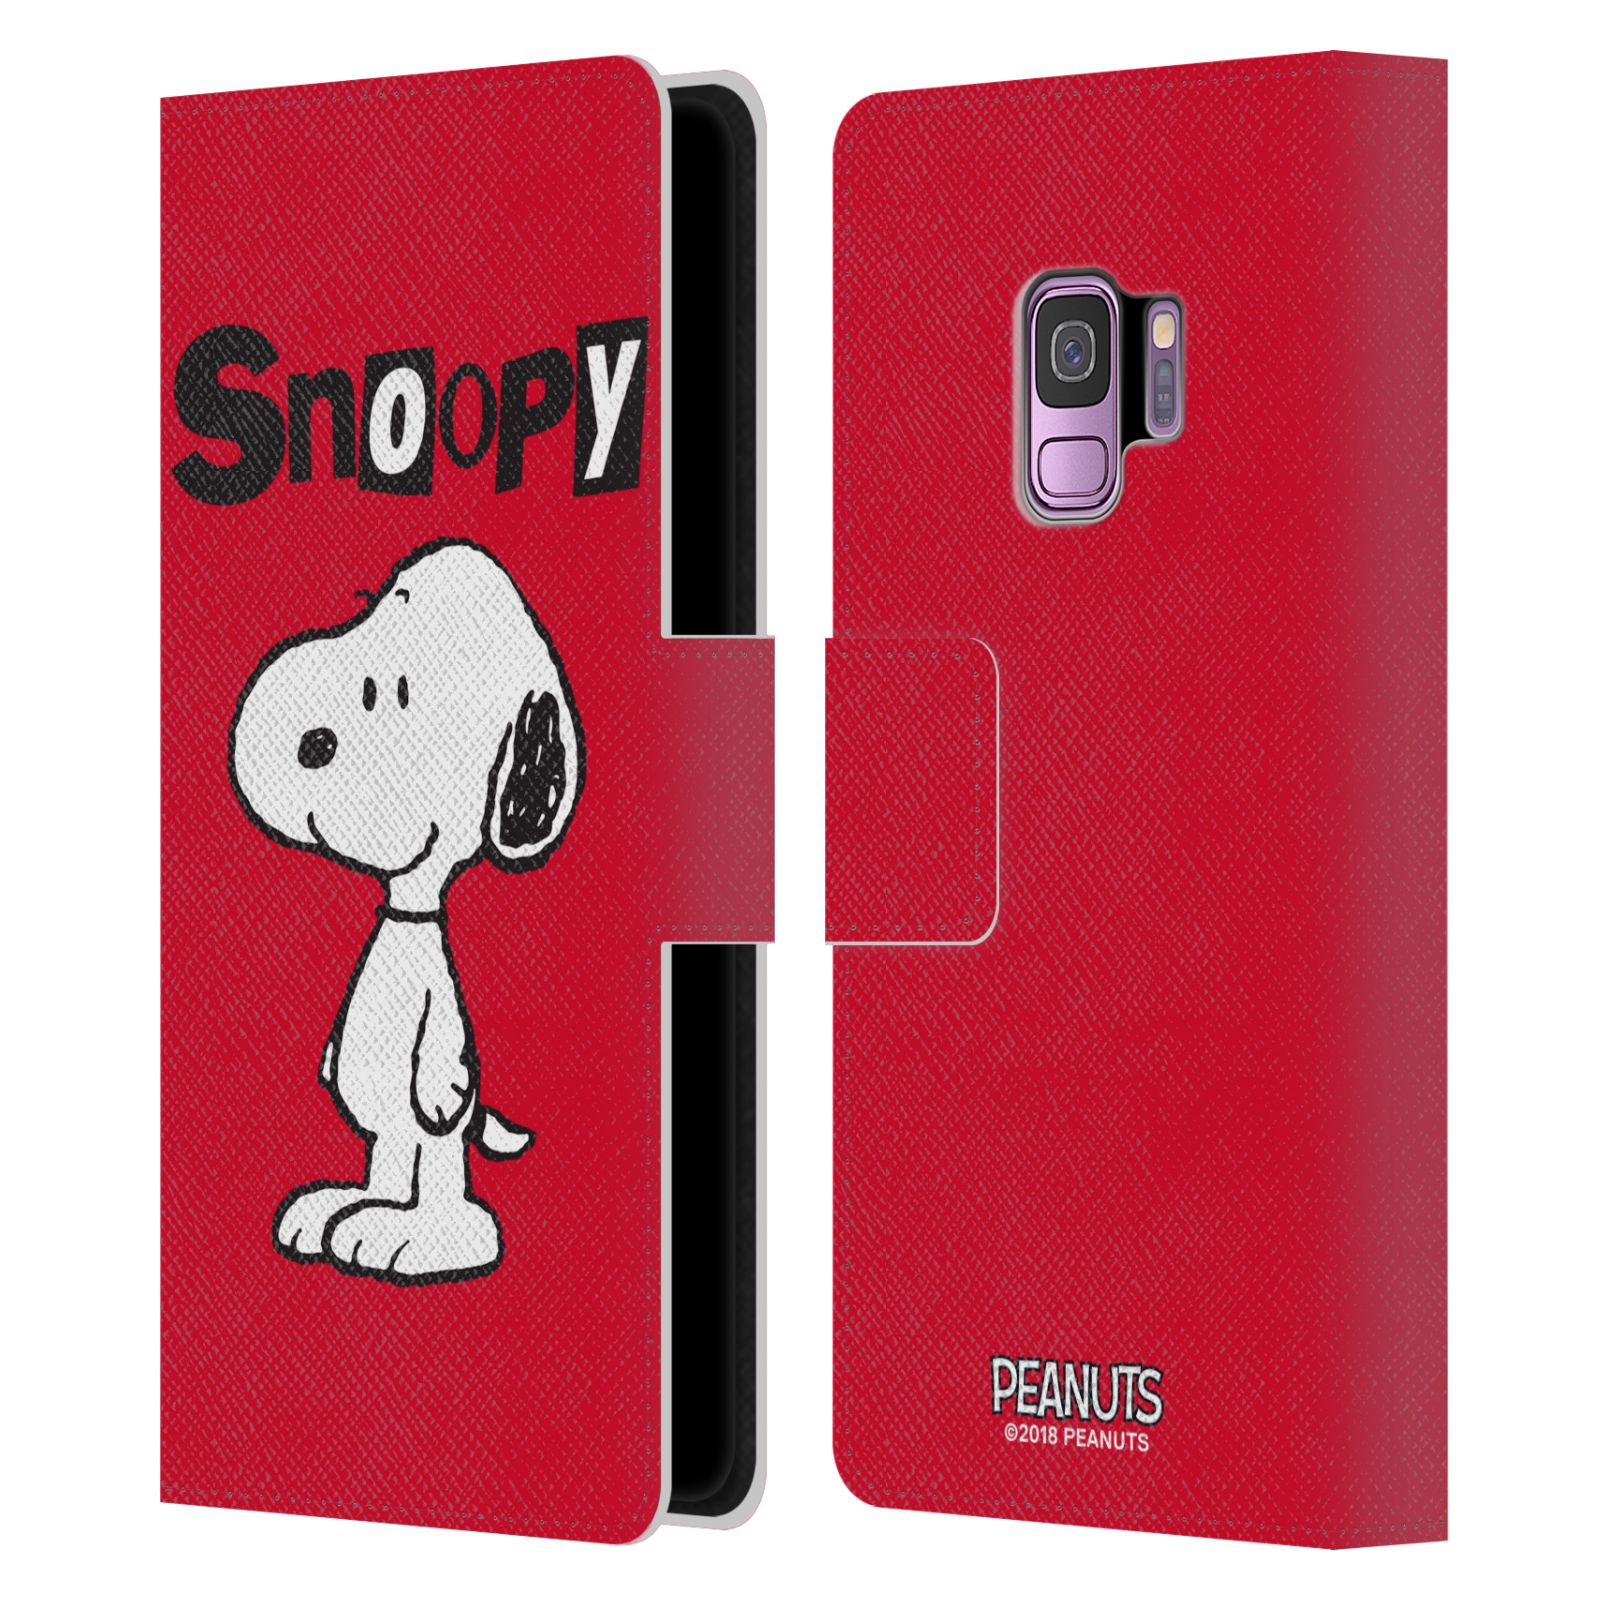 Pouzdro na mobil Samsung Galaxy S9 - HEAD CASE - Peanuts - Snoopy červená